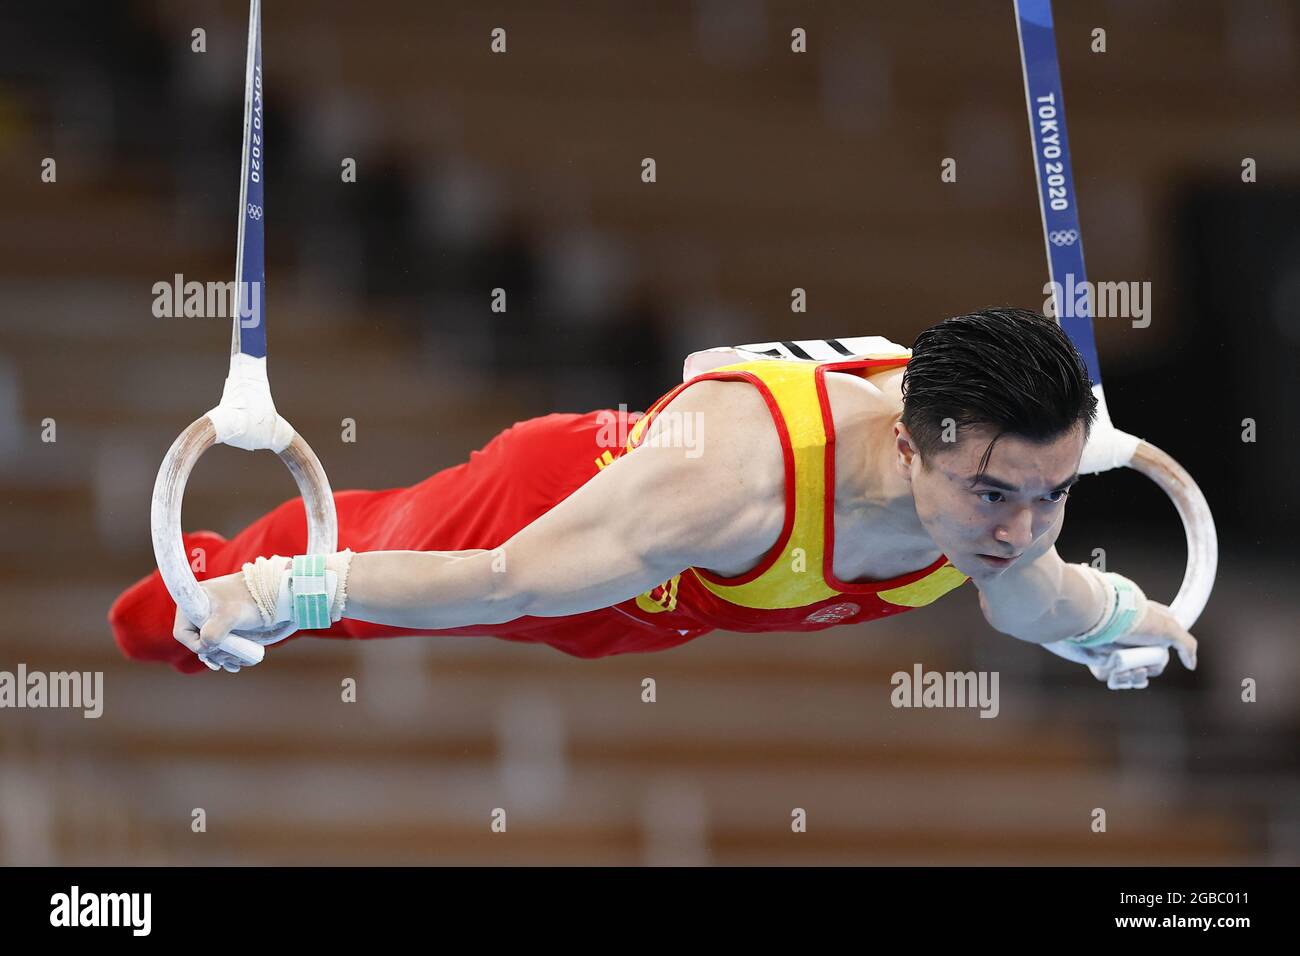 Adolescente chino Liu encabeza clasificación en aros en Mundial de Gimnasia  (2)